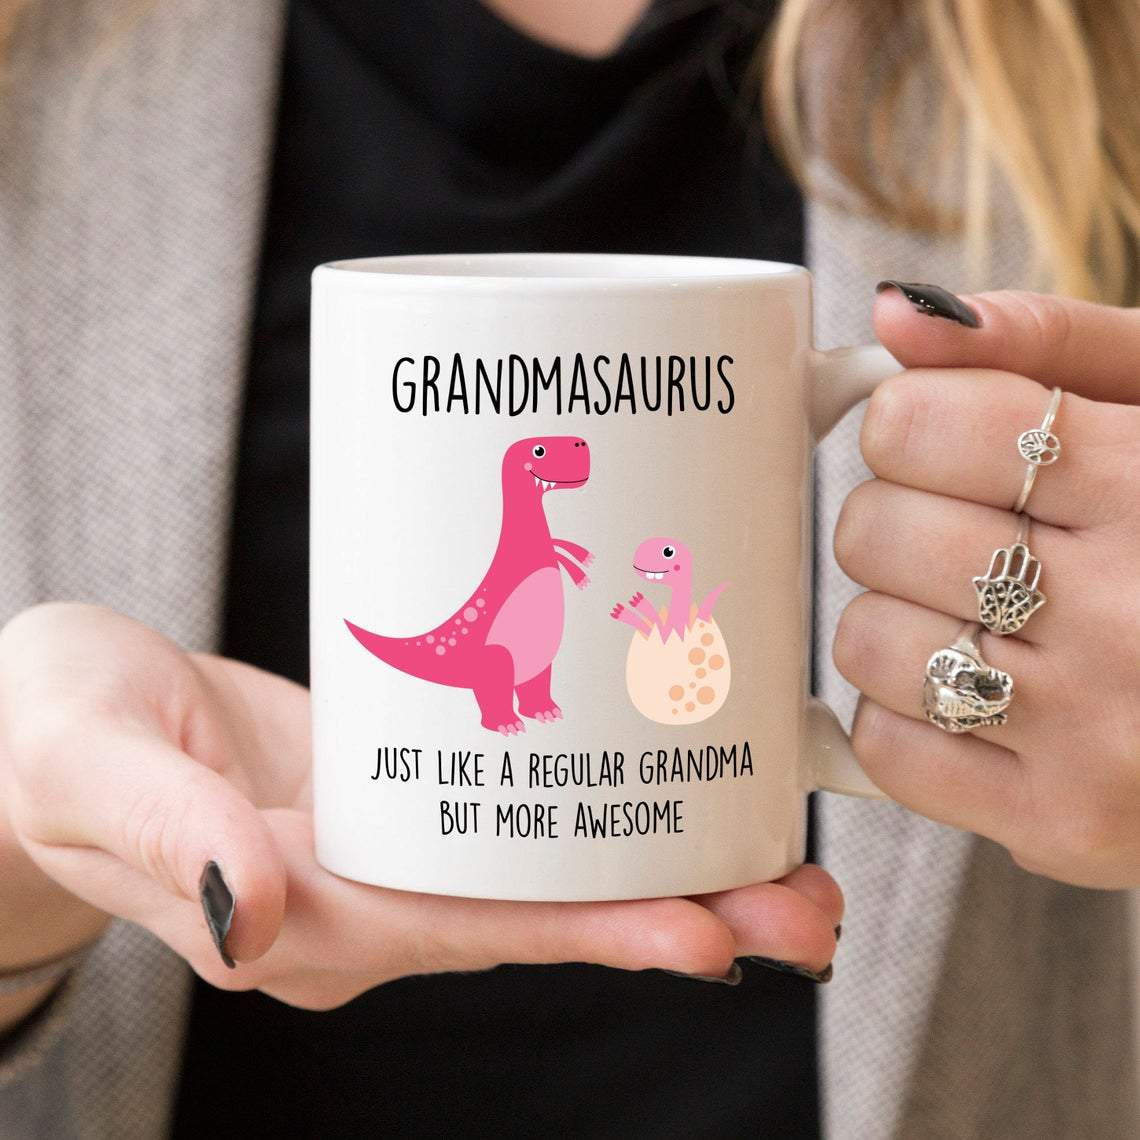 Grandmasaurus Coffee Mug, Grandma Mug Gifts, Grandmother Gift, Funny Grandma Gift